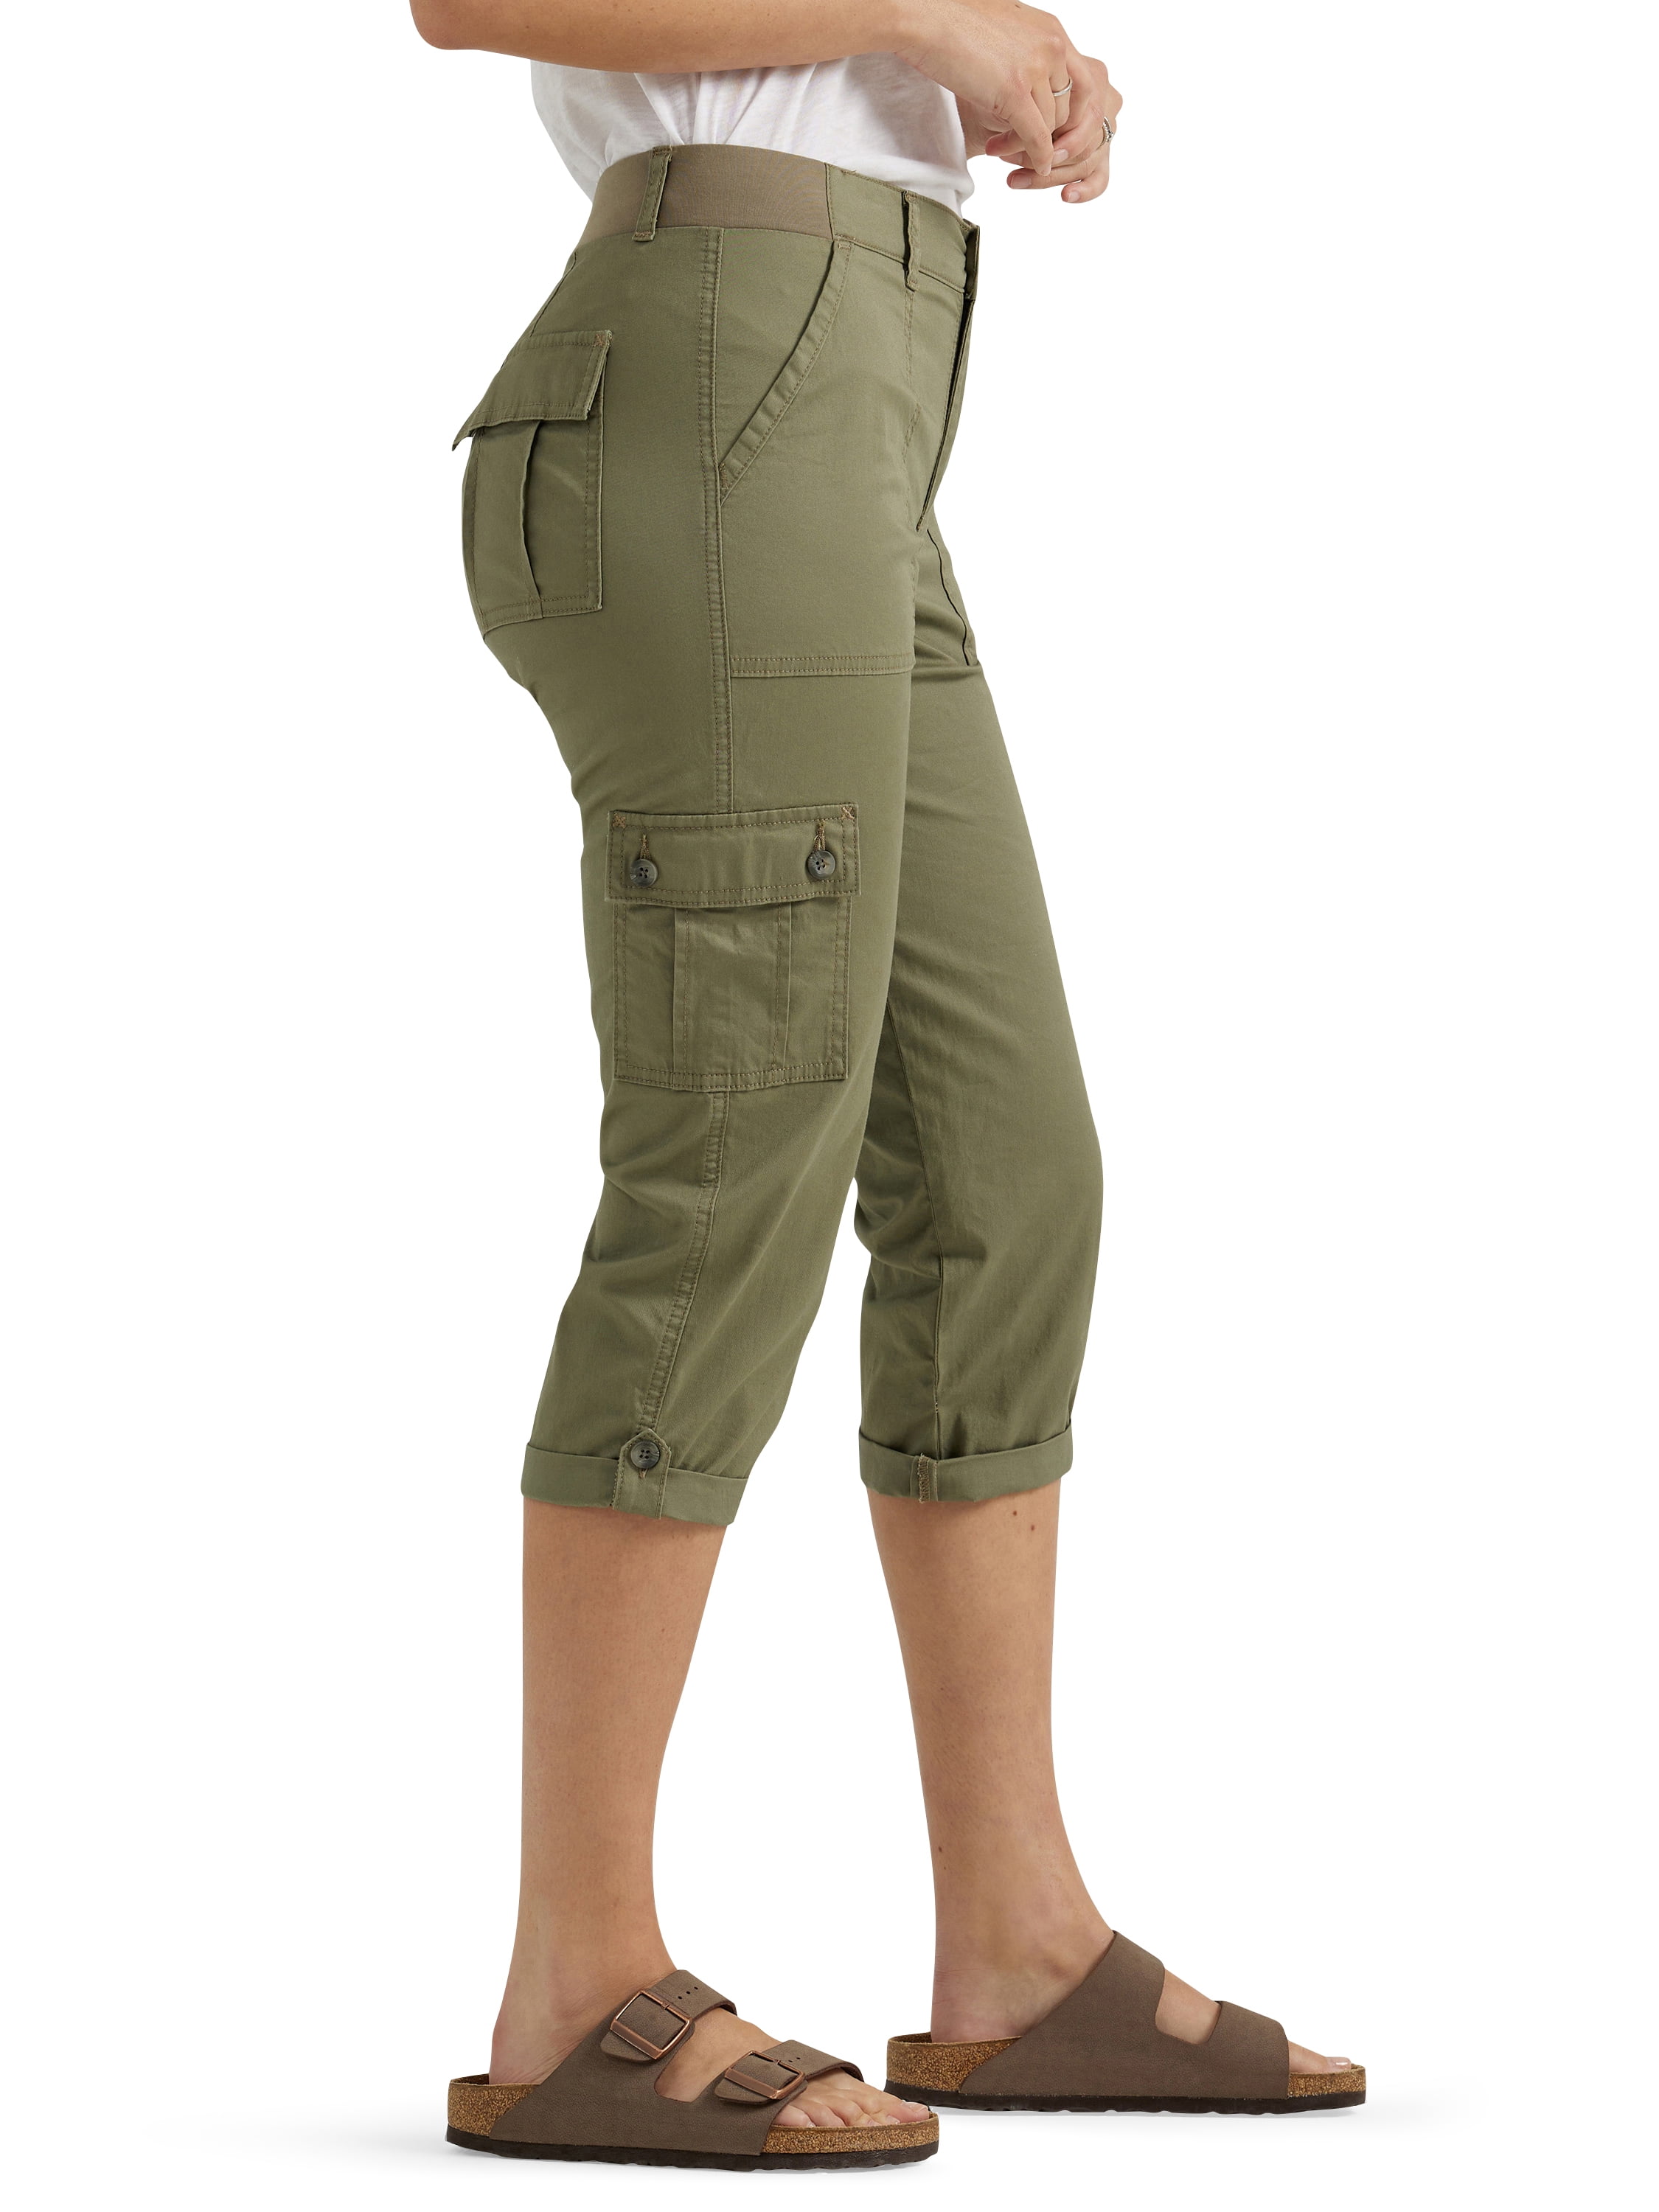 Telluride Clothing Co. Women's Capri Pants Size 10 Olive (T009K)